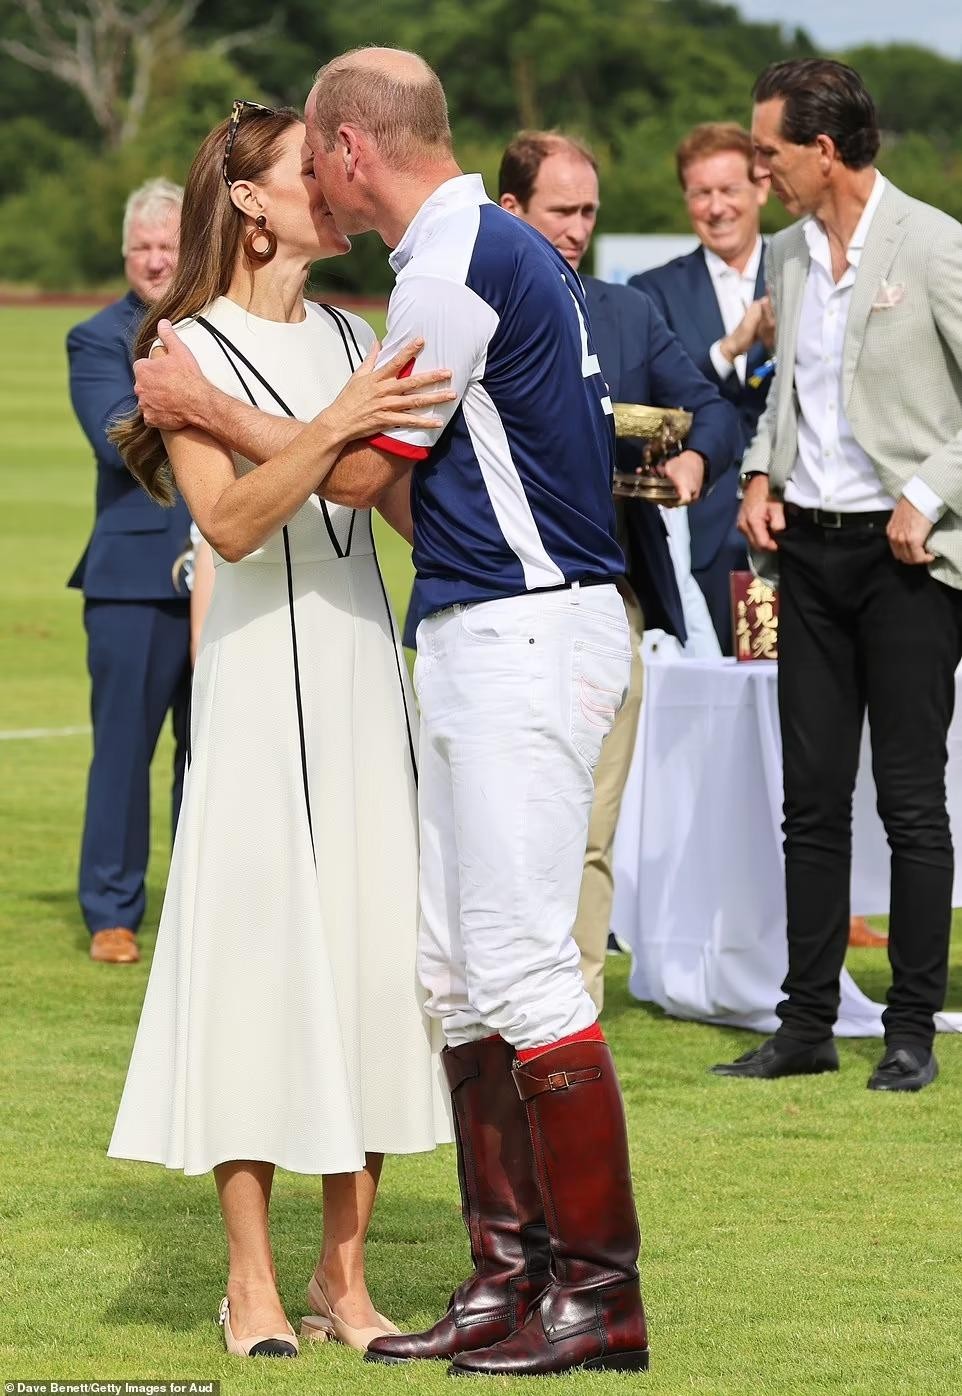 Công nương Kate rạng ngời trên sân đấu polo, được chồng hôn mừng chiến thắng - Ảnh 10.